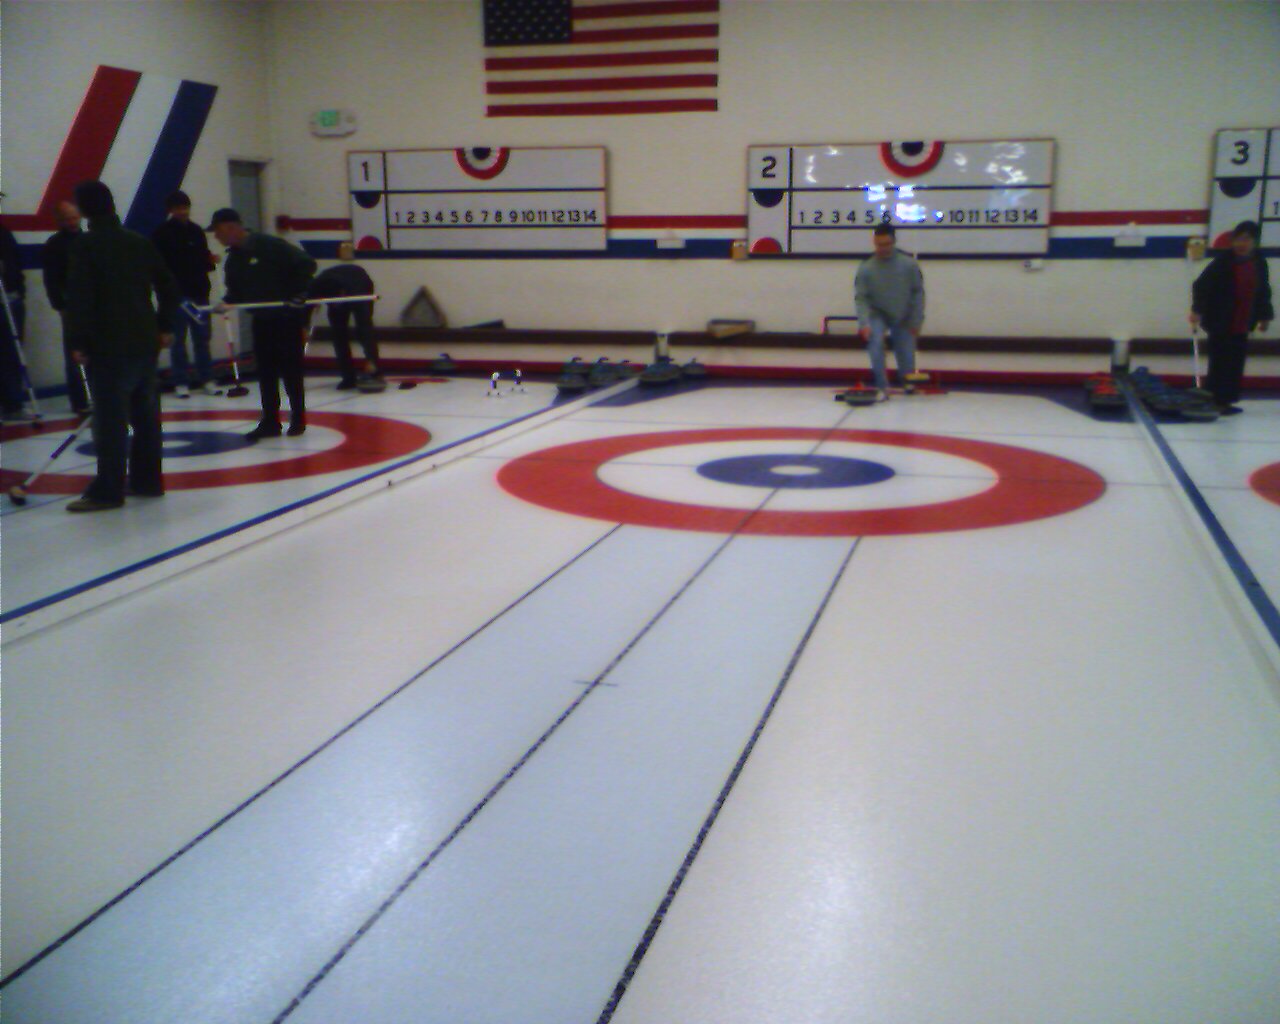 Curling!